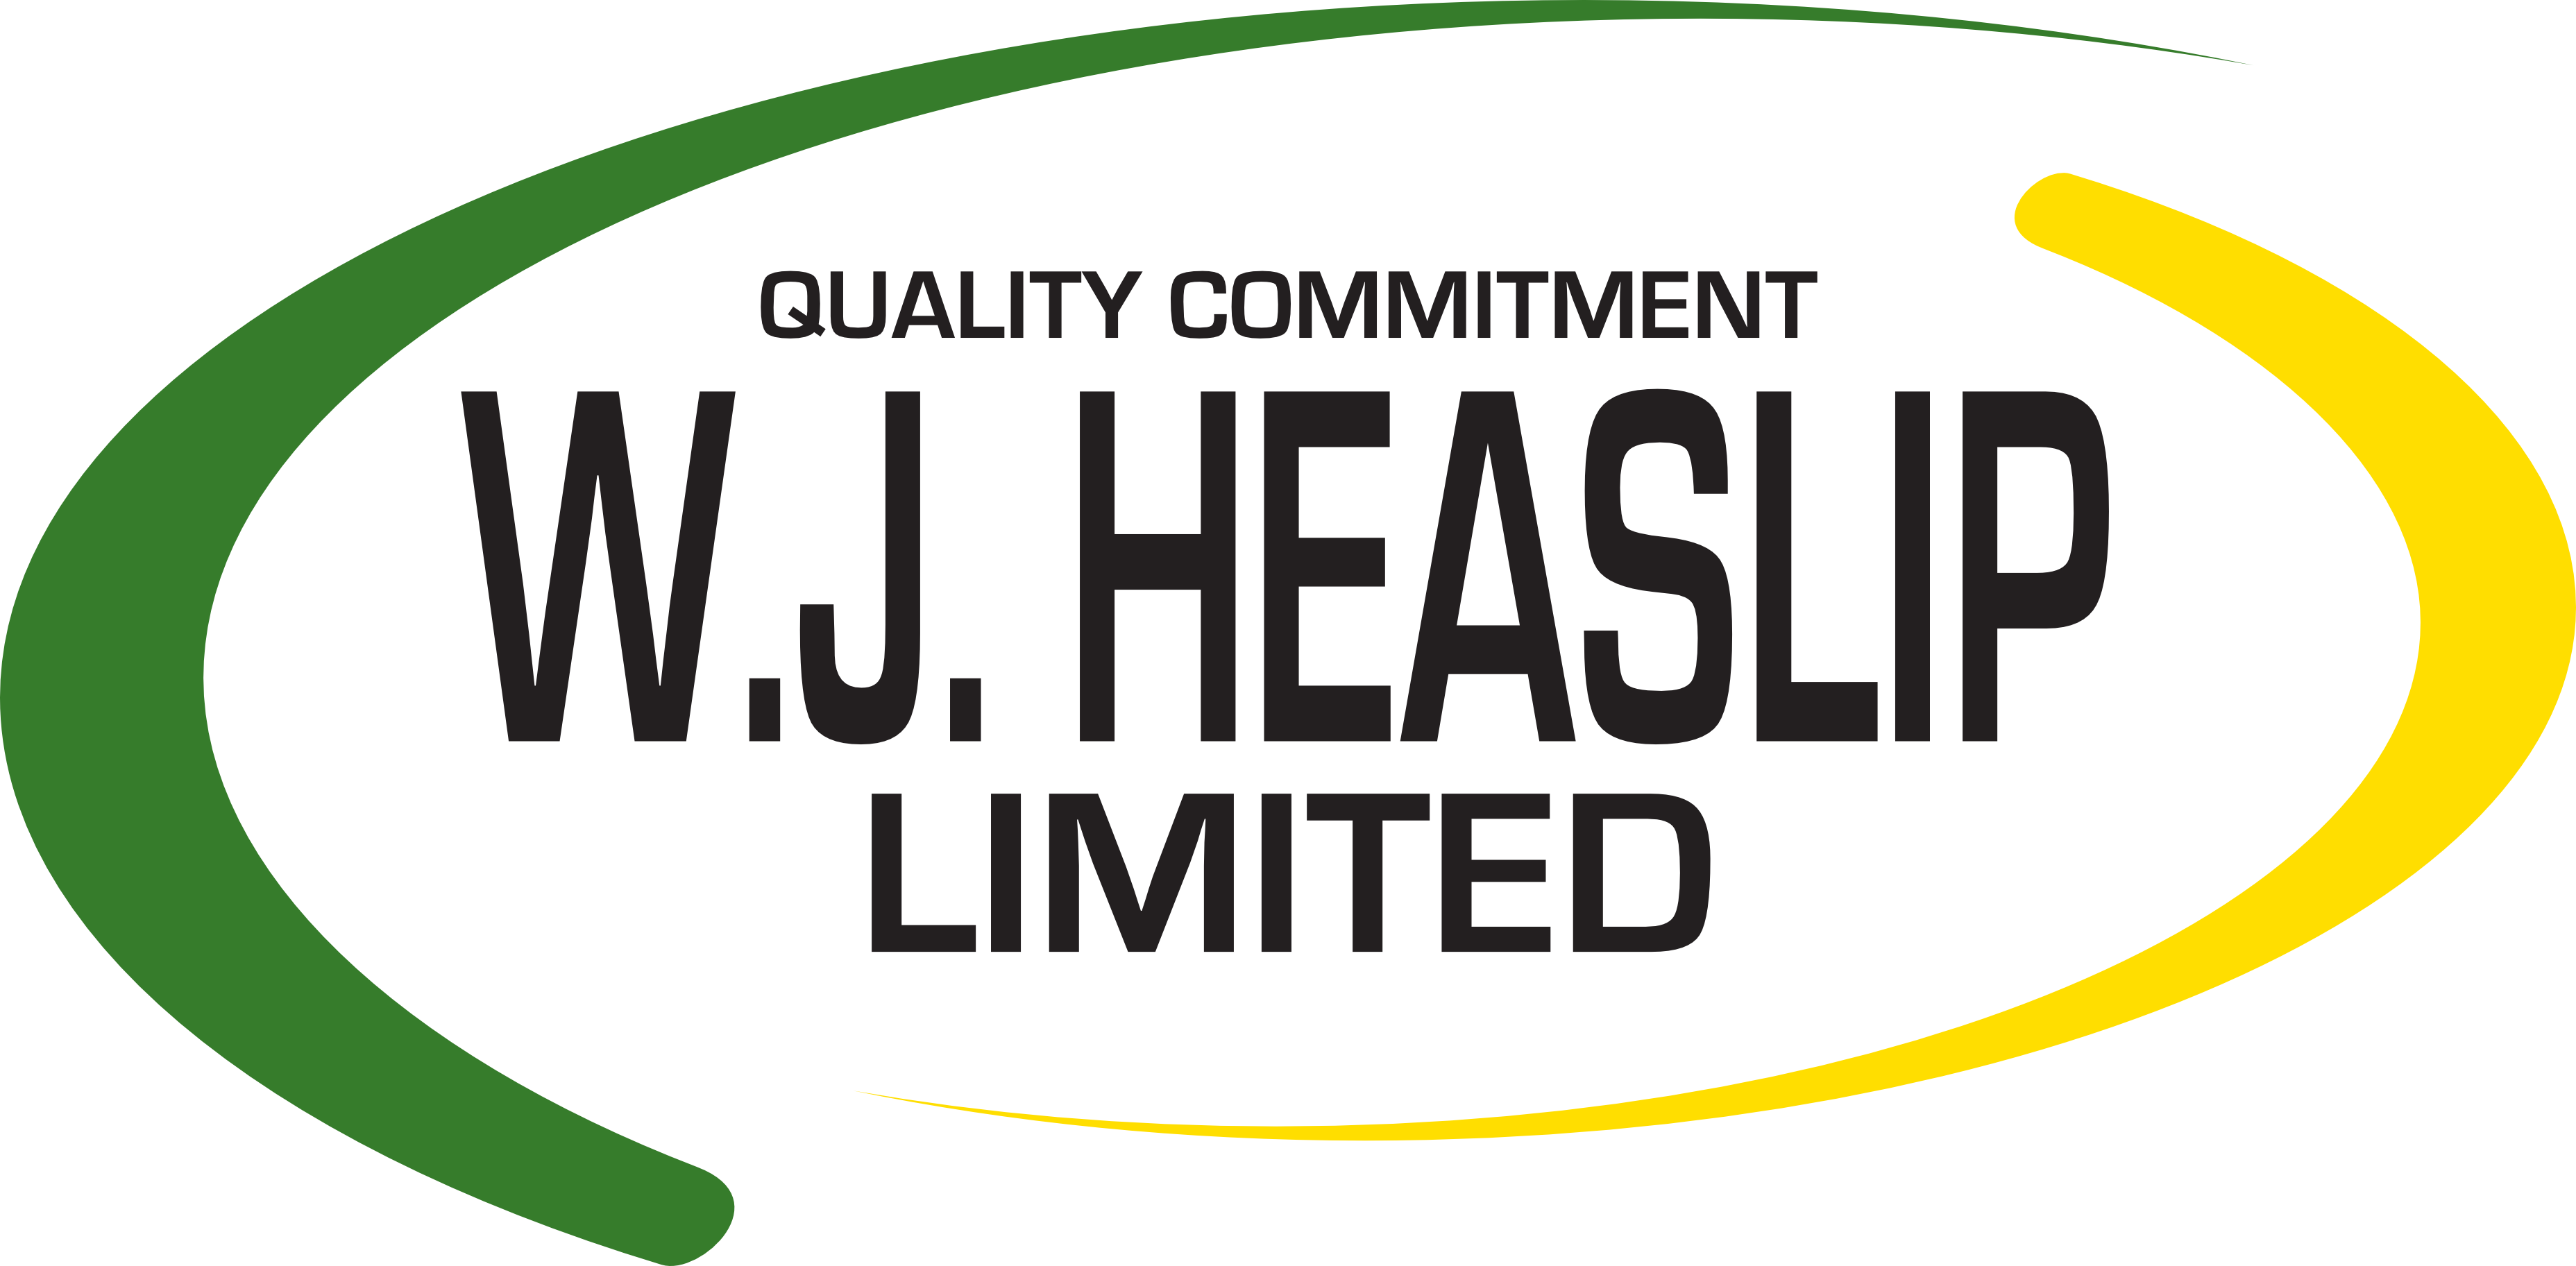 W.J. Heaslip Limited